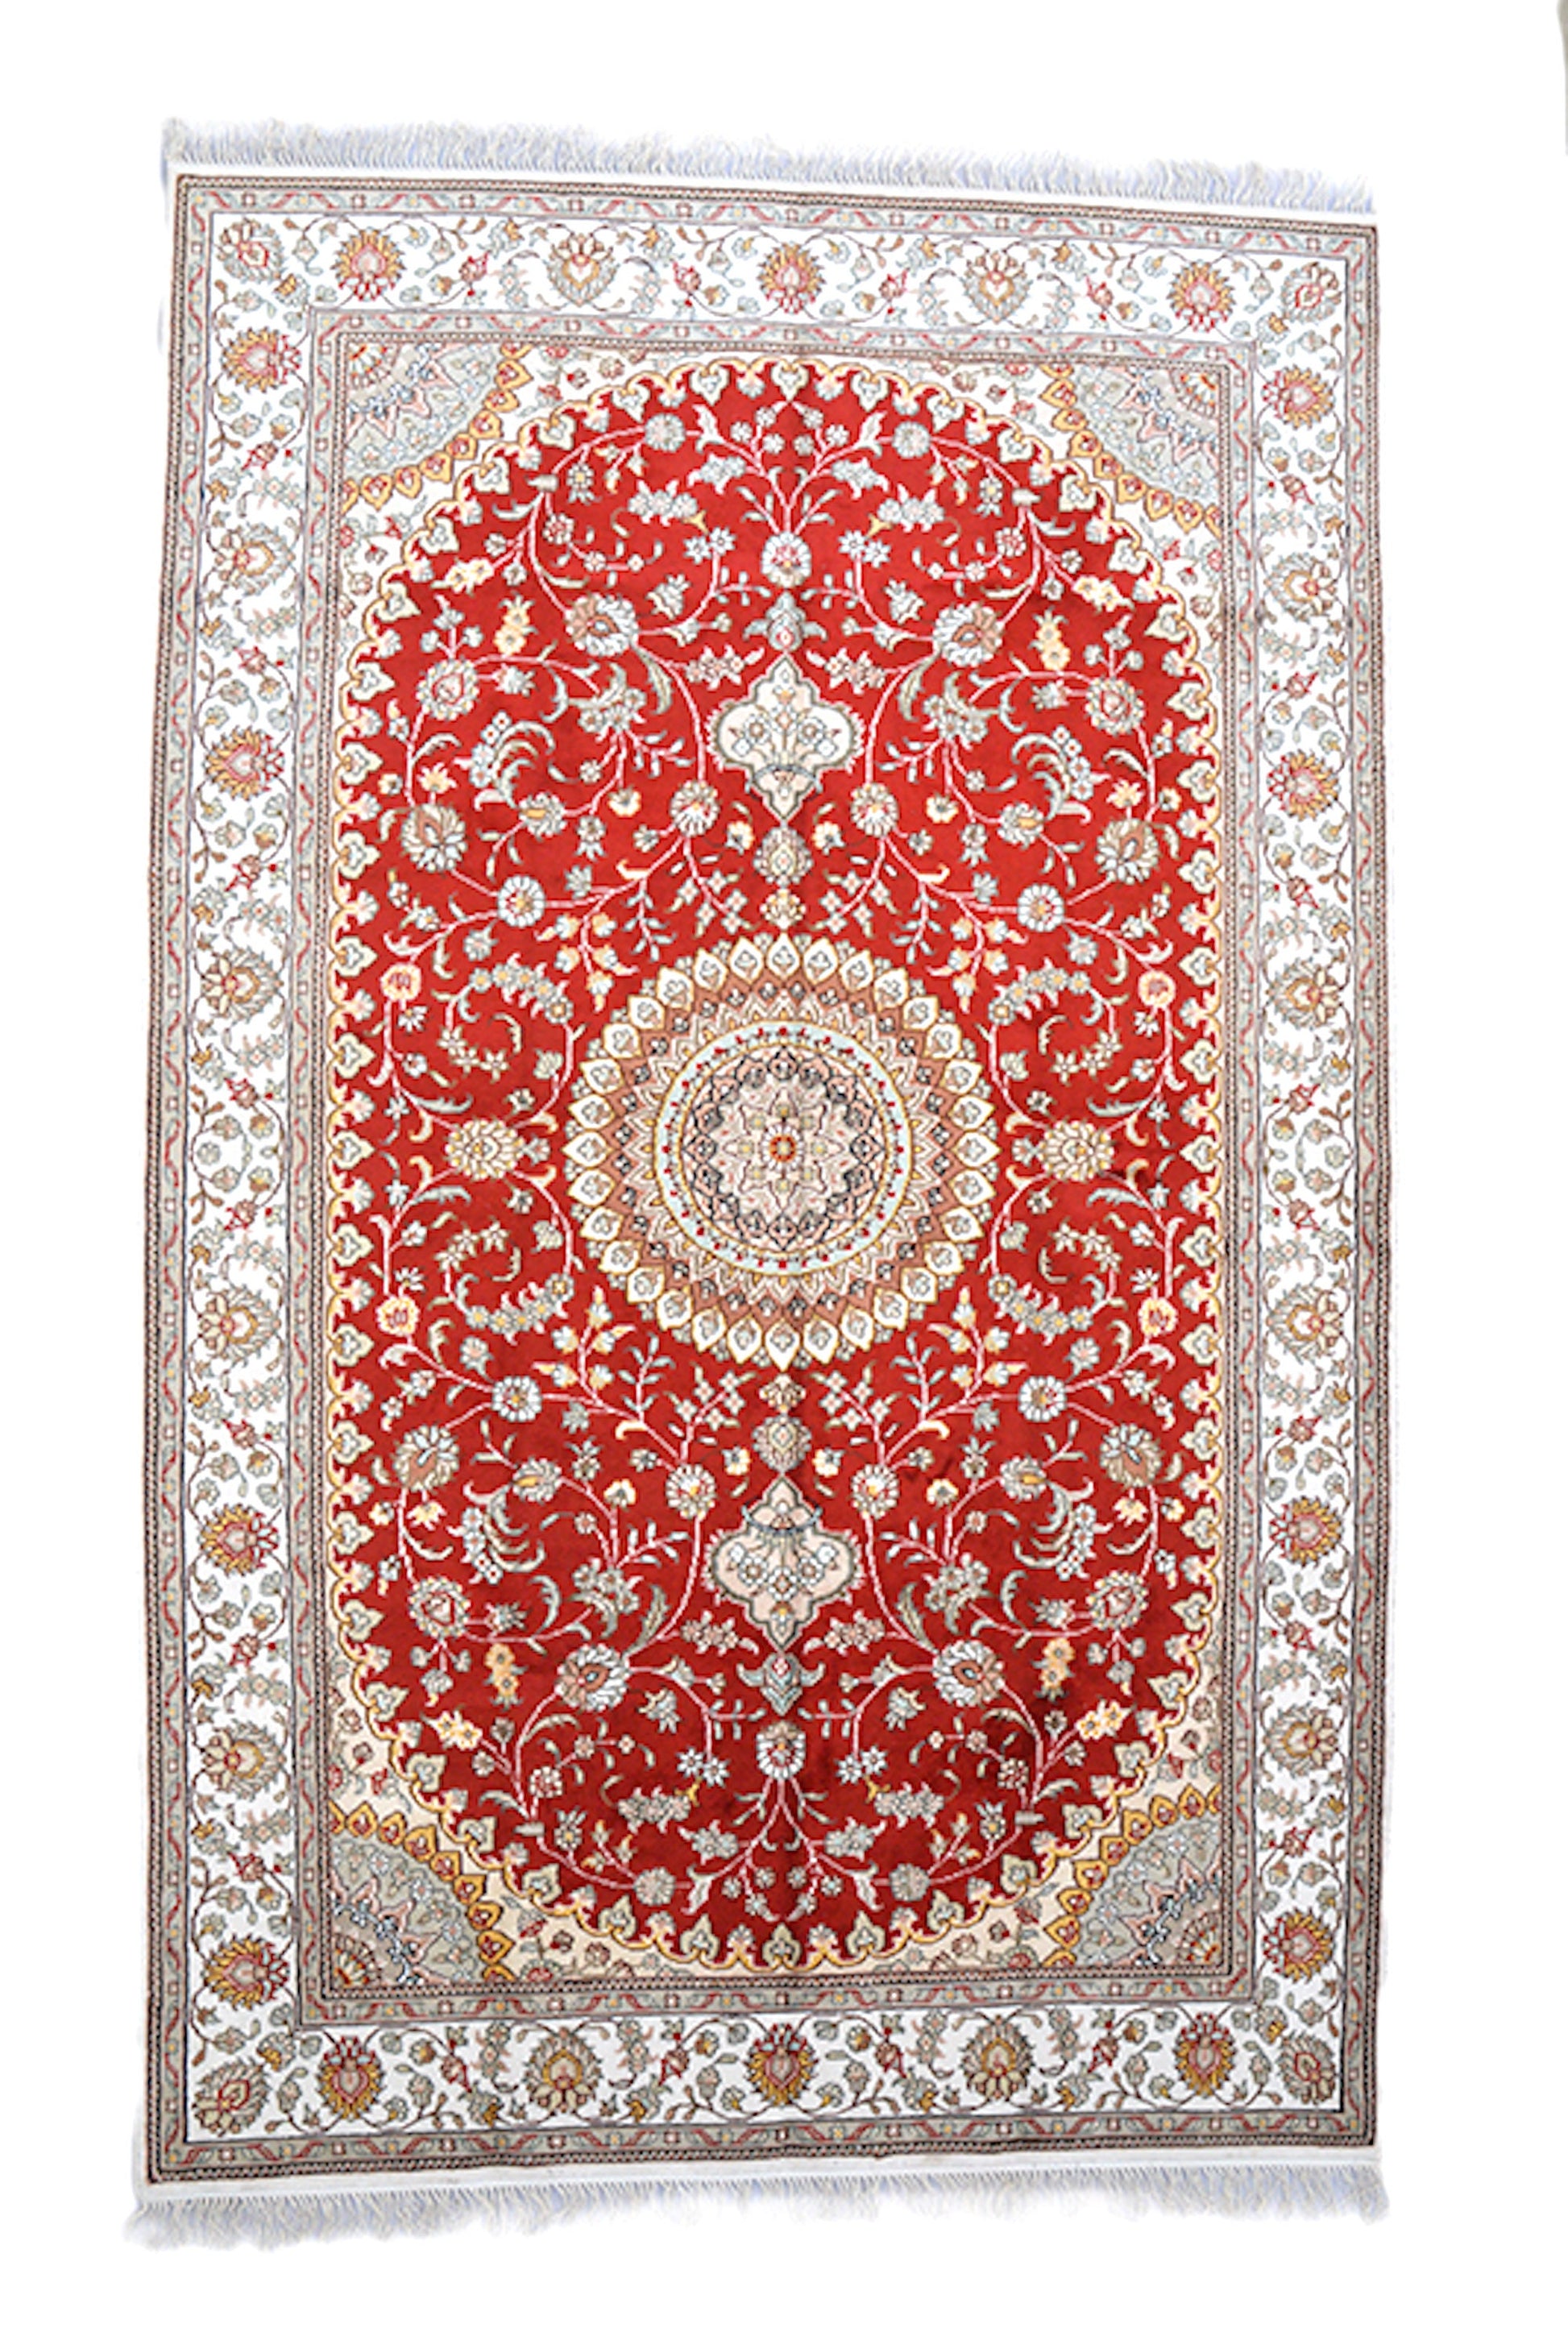 5 x 5 Feet Red Beige Medallion Rug, Handmade Area Rug, Oriental Persian Caucasian Rug, Floral Rug, Wool Tribal Vintage